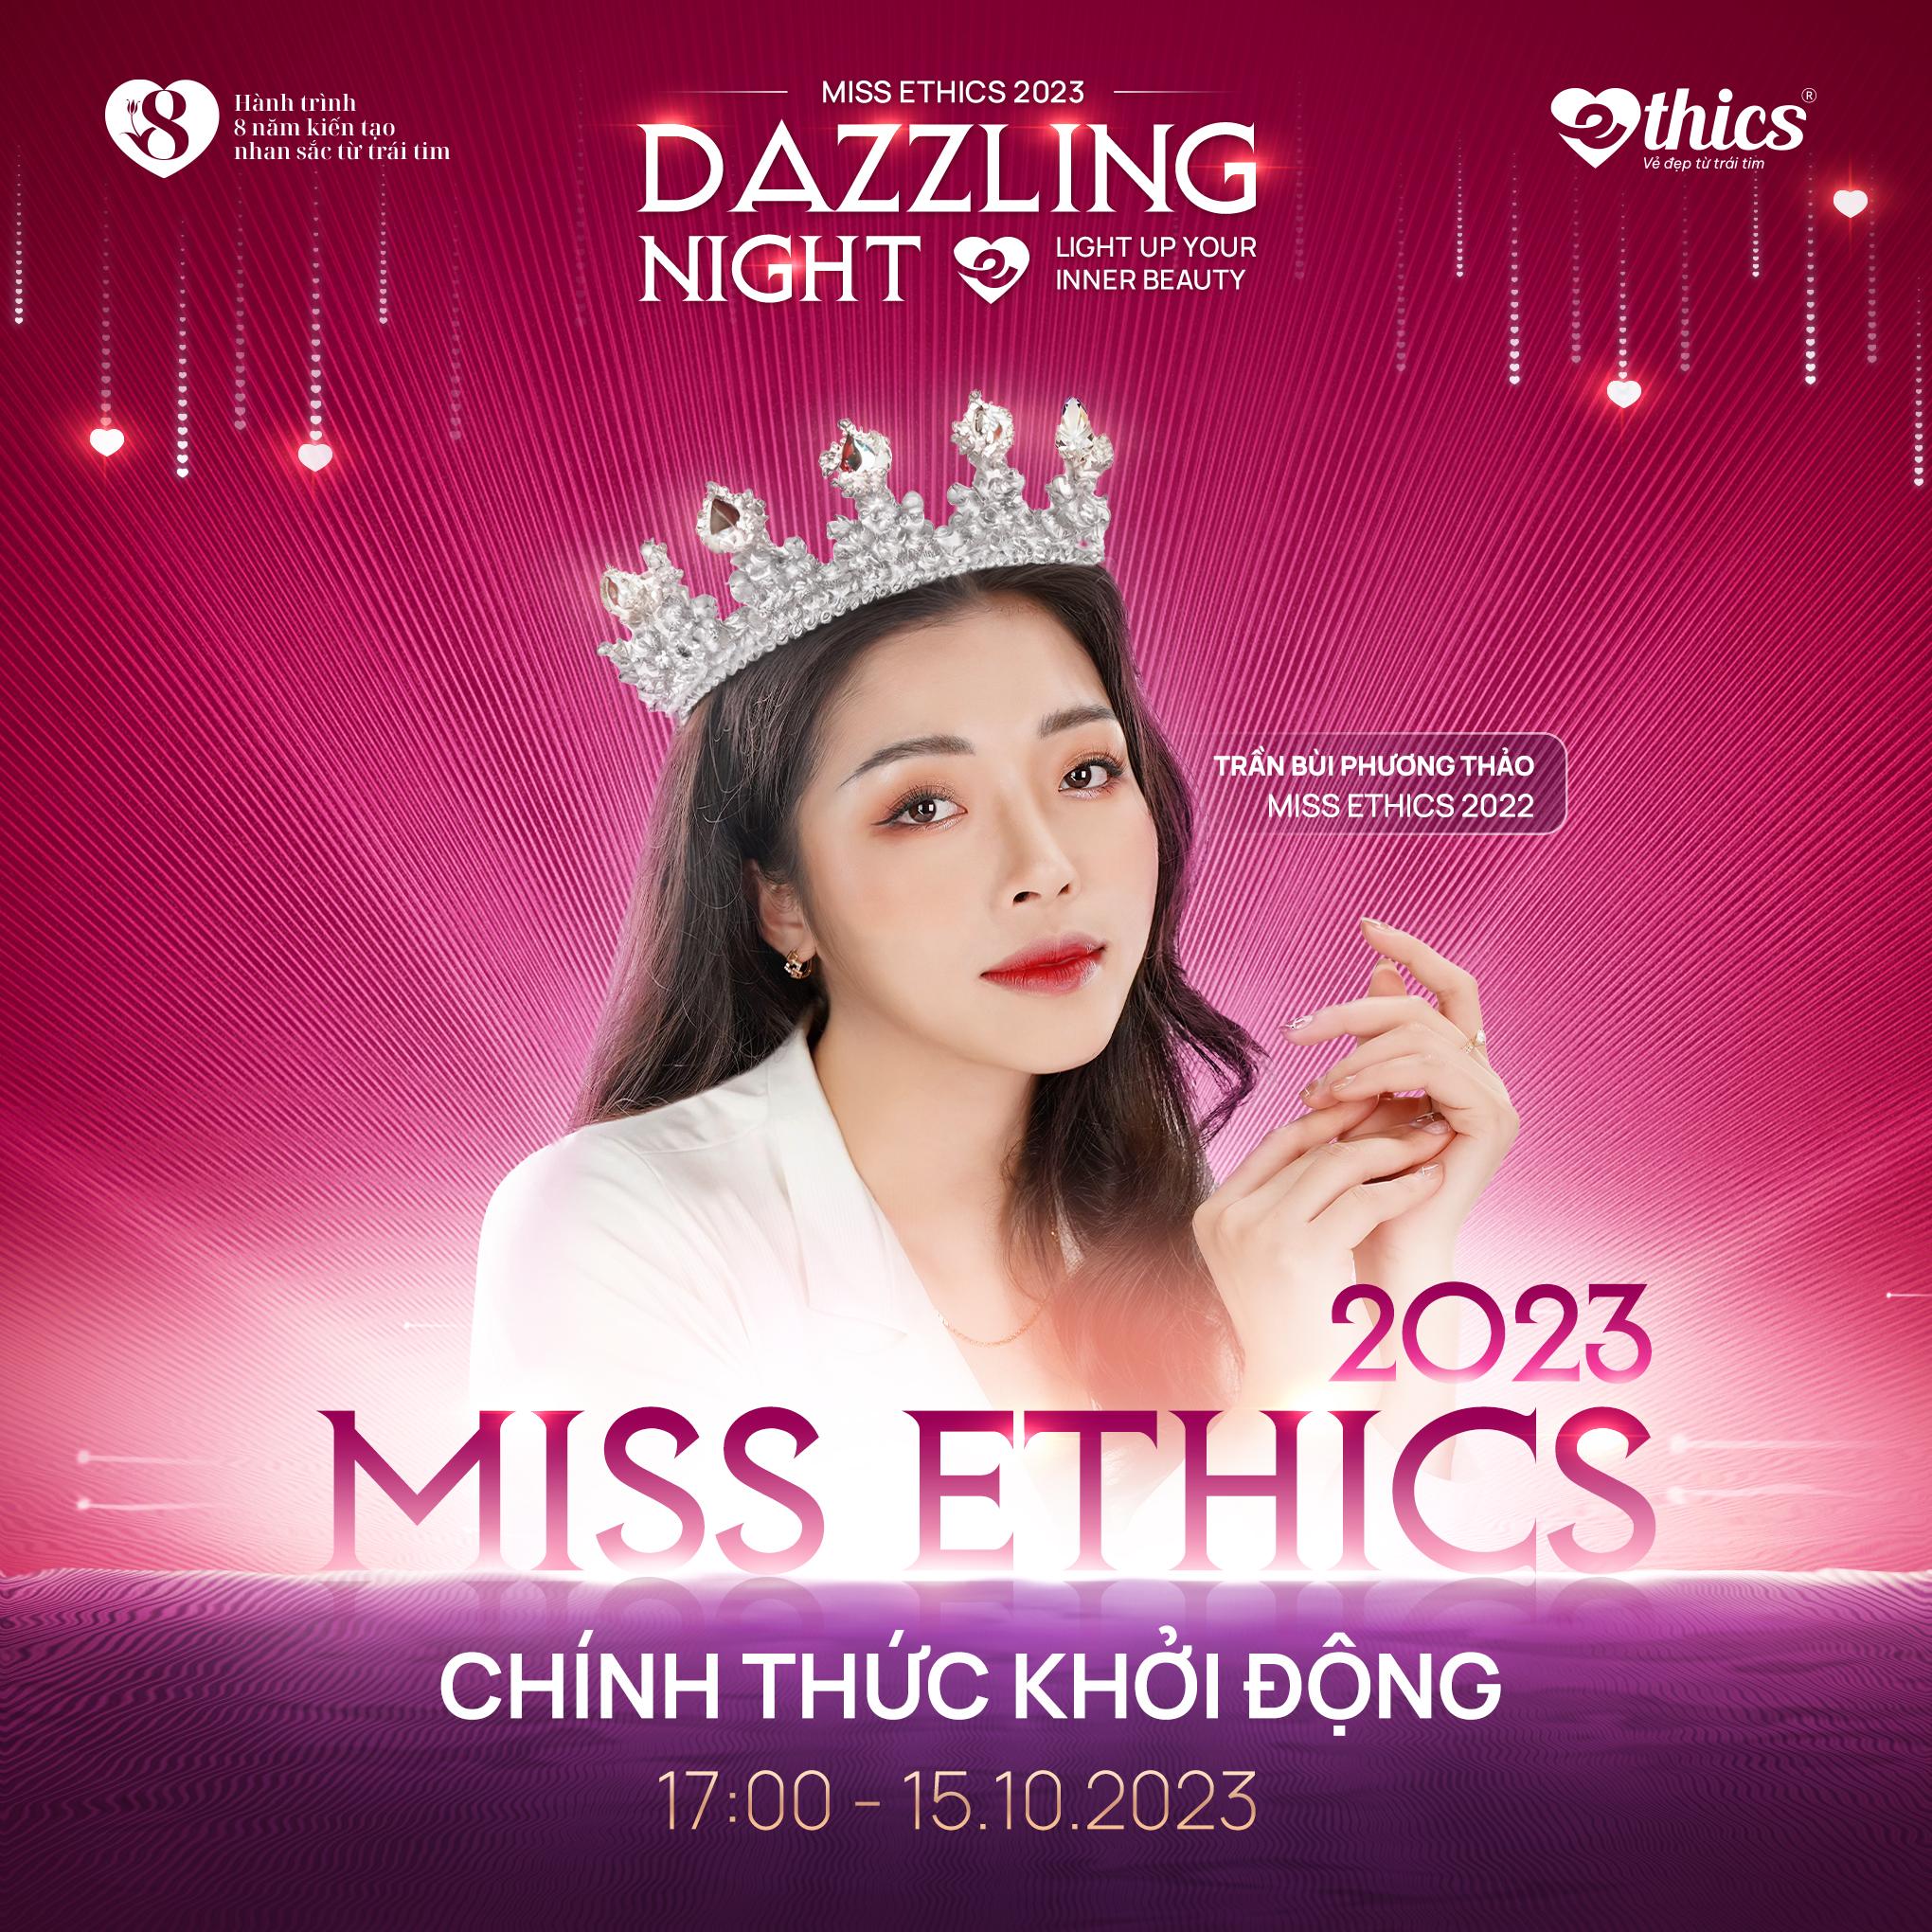 Thẩm mỹ viện Ethics chơi lớn với Miss Ethics 2023: Đầu tư “khủng”, dàn thí sinh mãn nhãn - 1